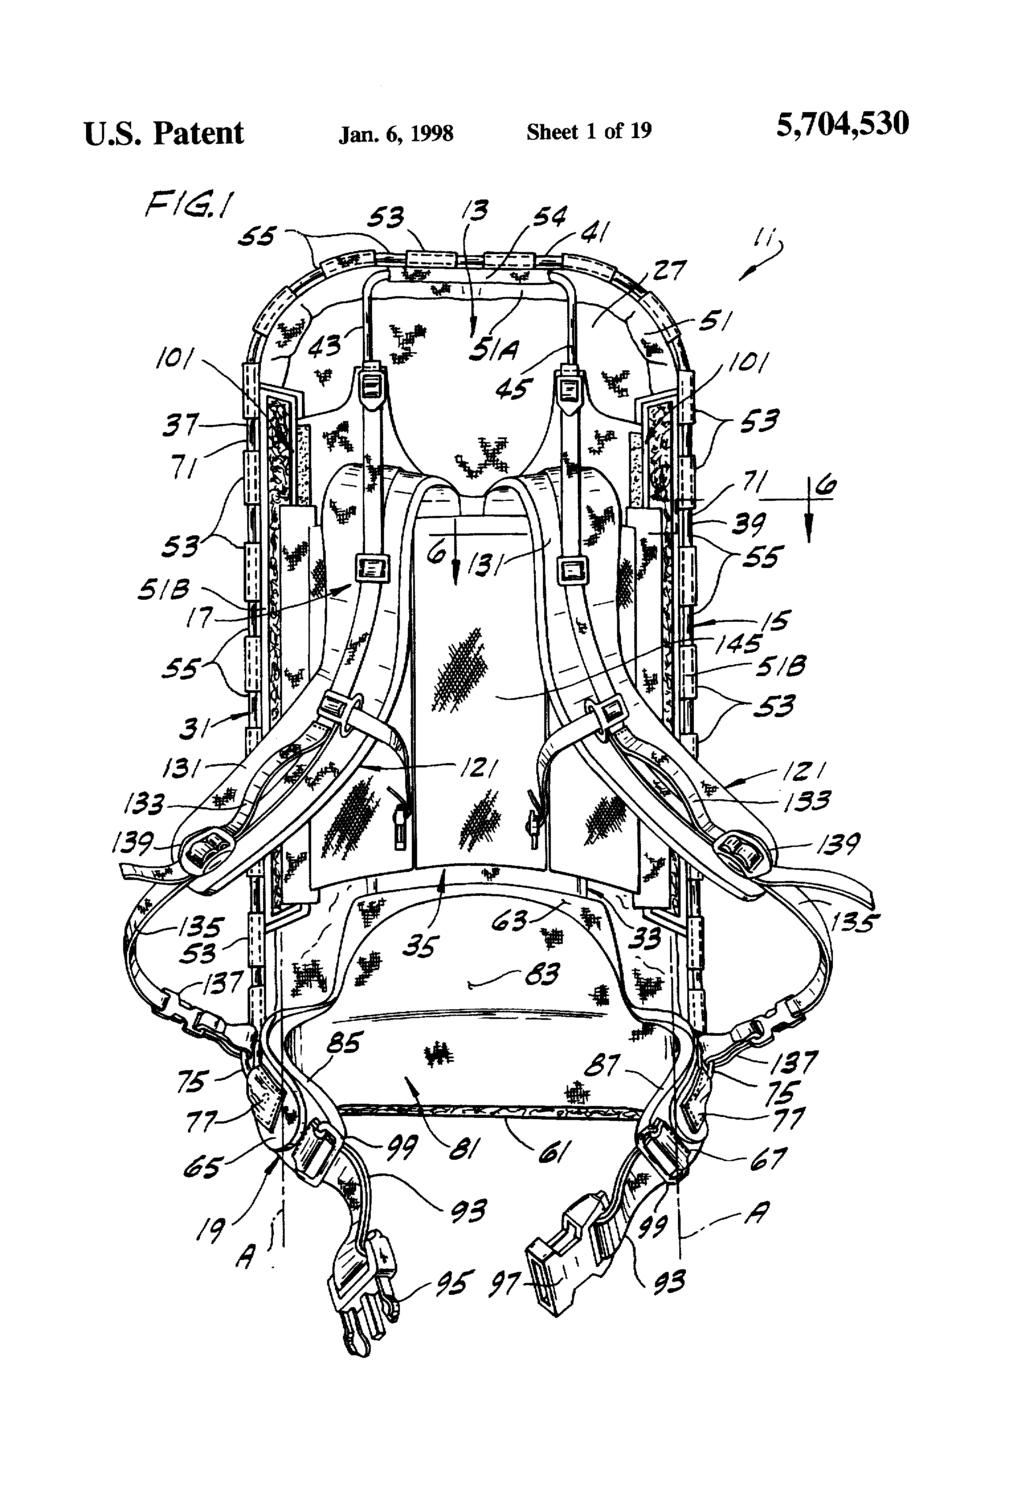 U.S. Patent Jan.